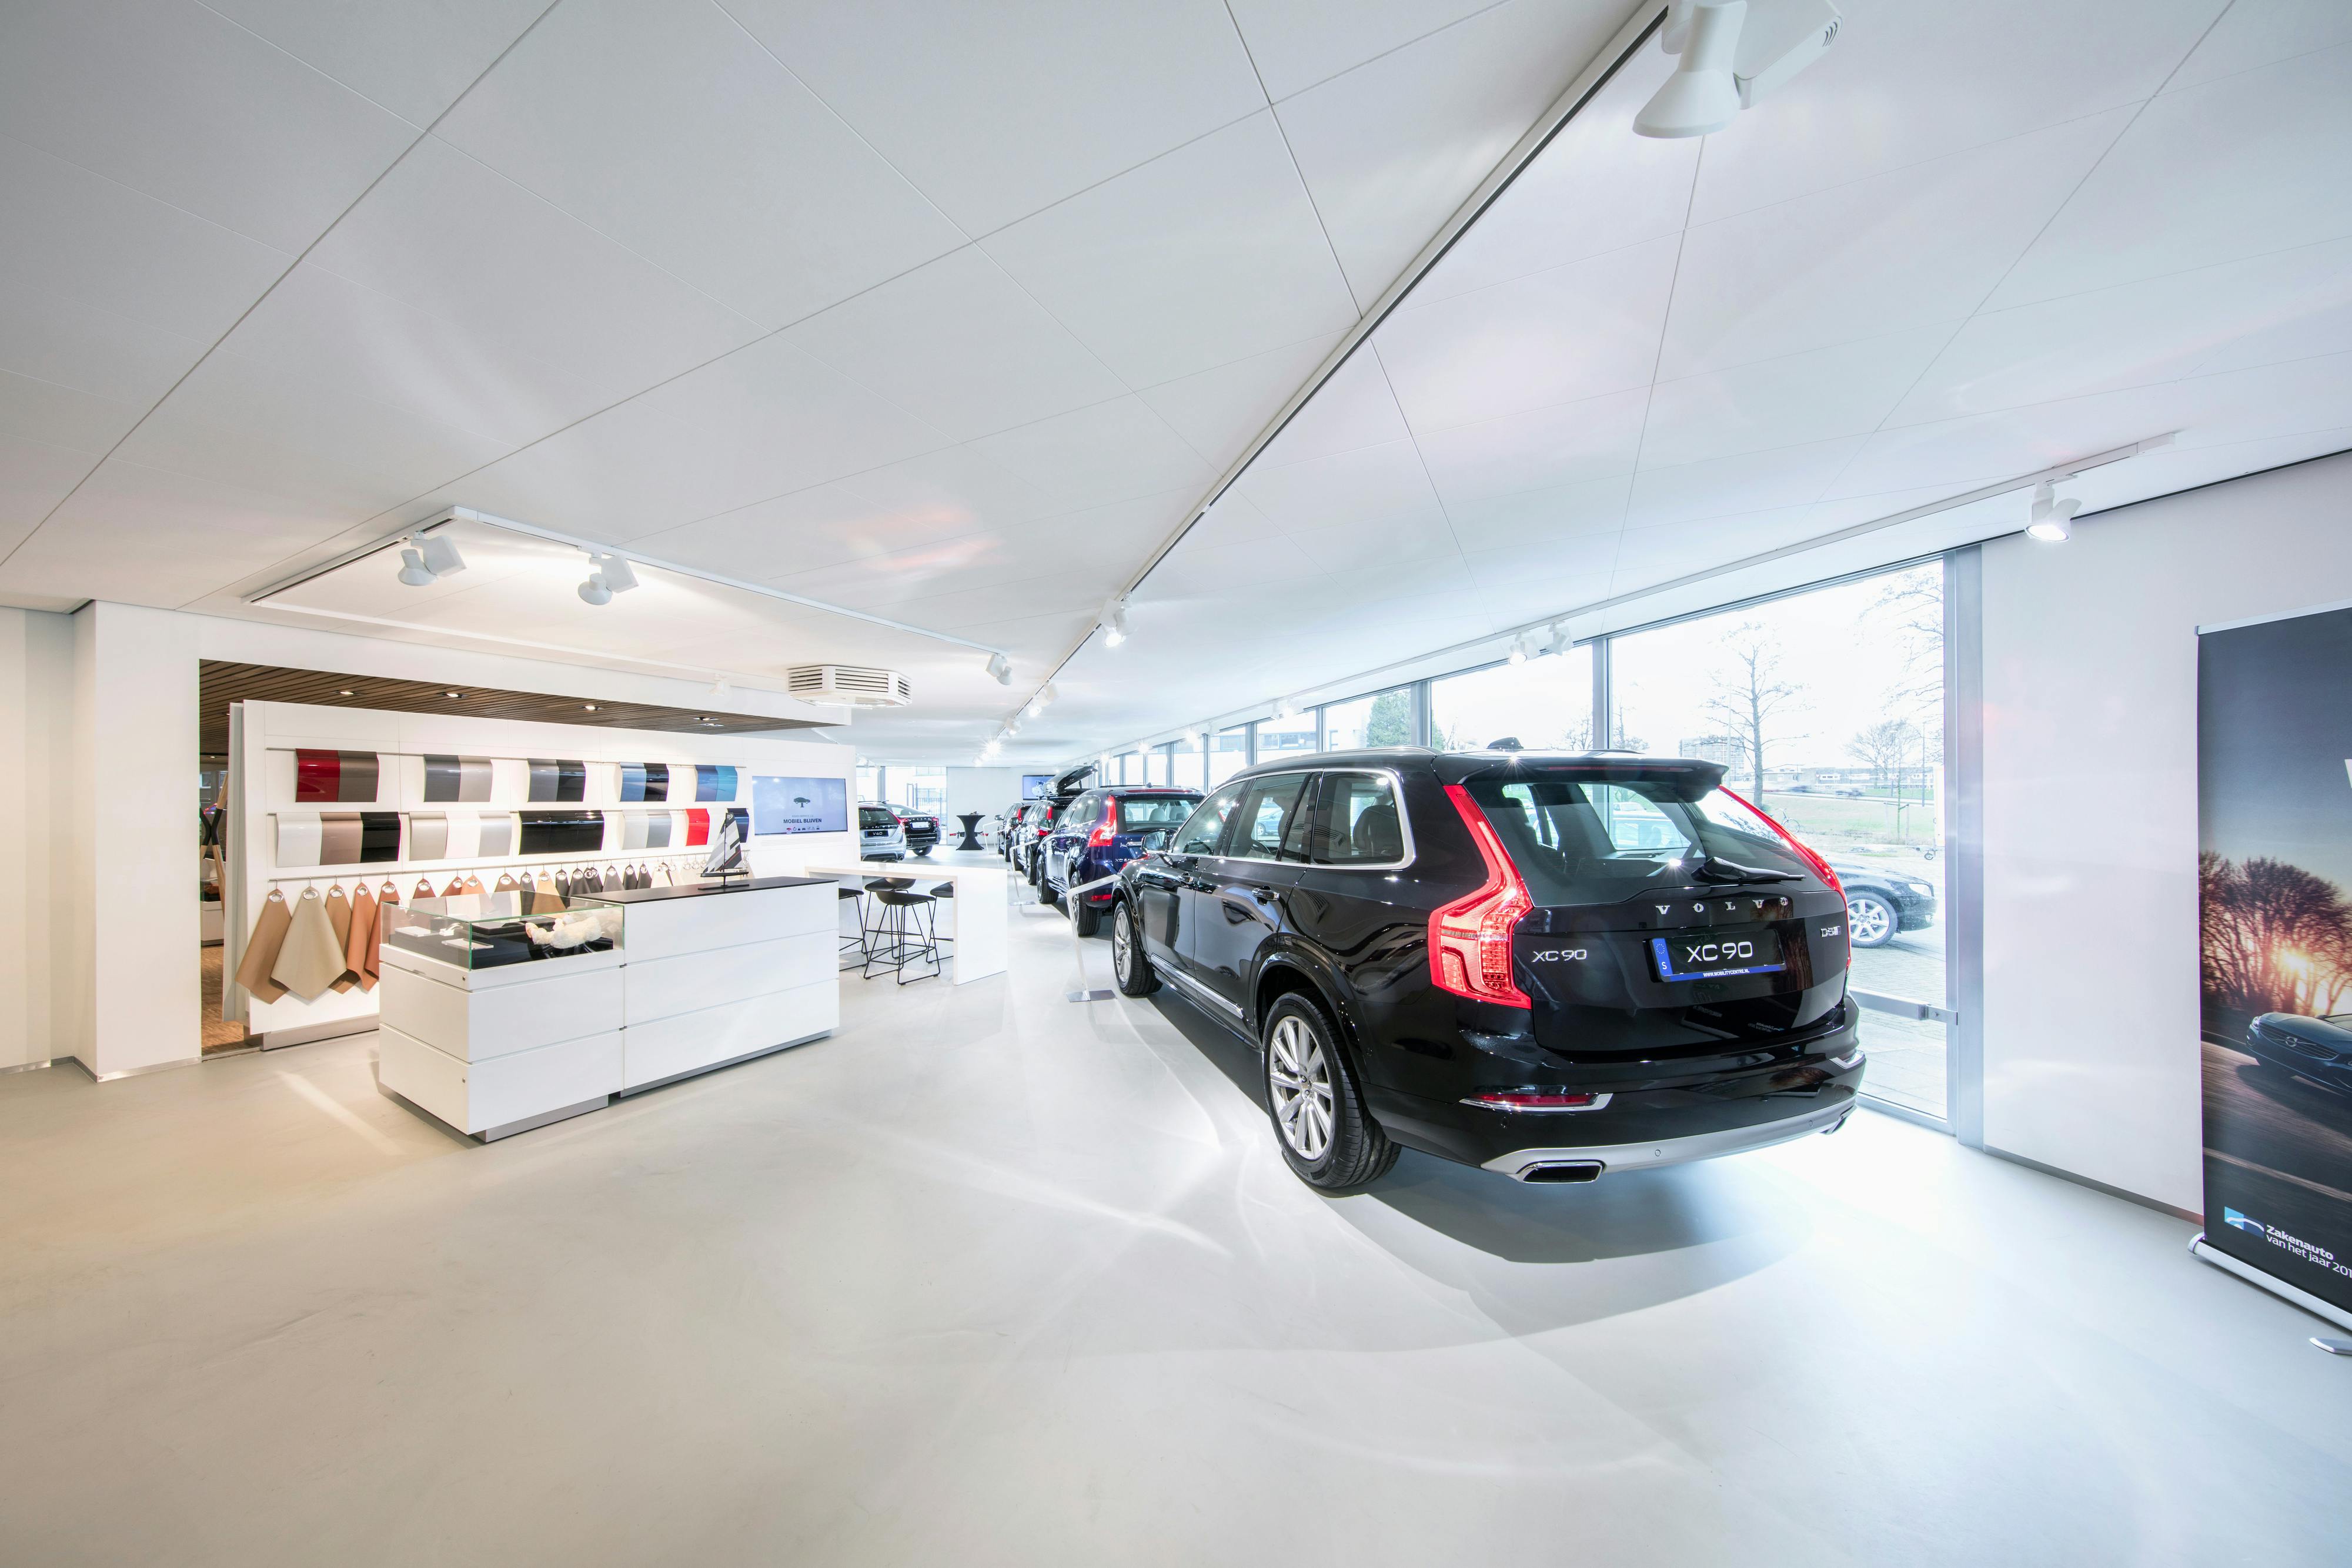 Volvo Mobility Centre,The Netherlands,Vlaardingen,750 m²,Toke Peelen,Volvo Netherlands,Bovero B.V.,ROCKFON Blanka,D-edge,600X600,White